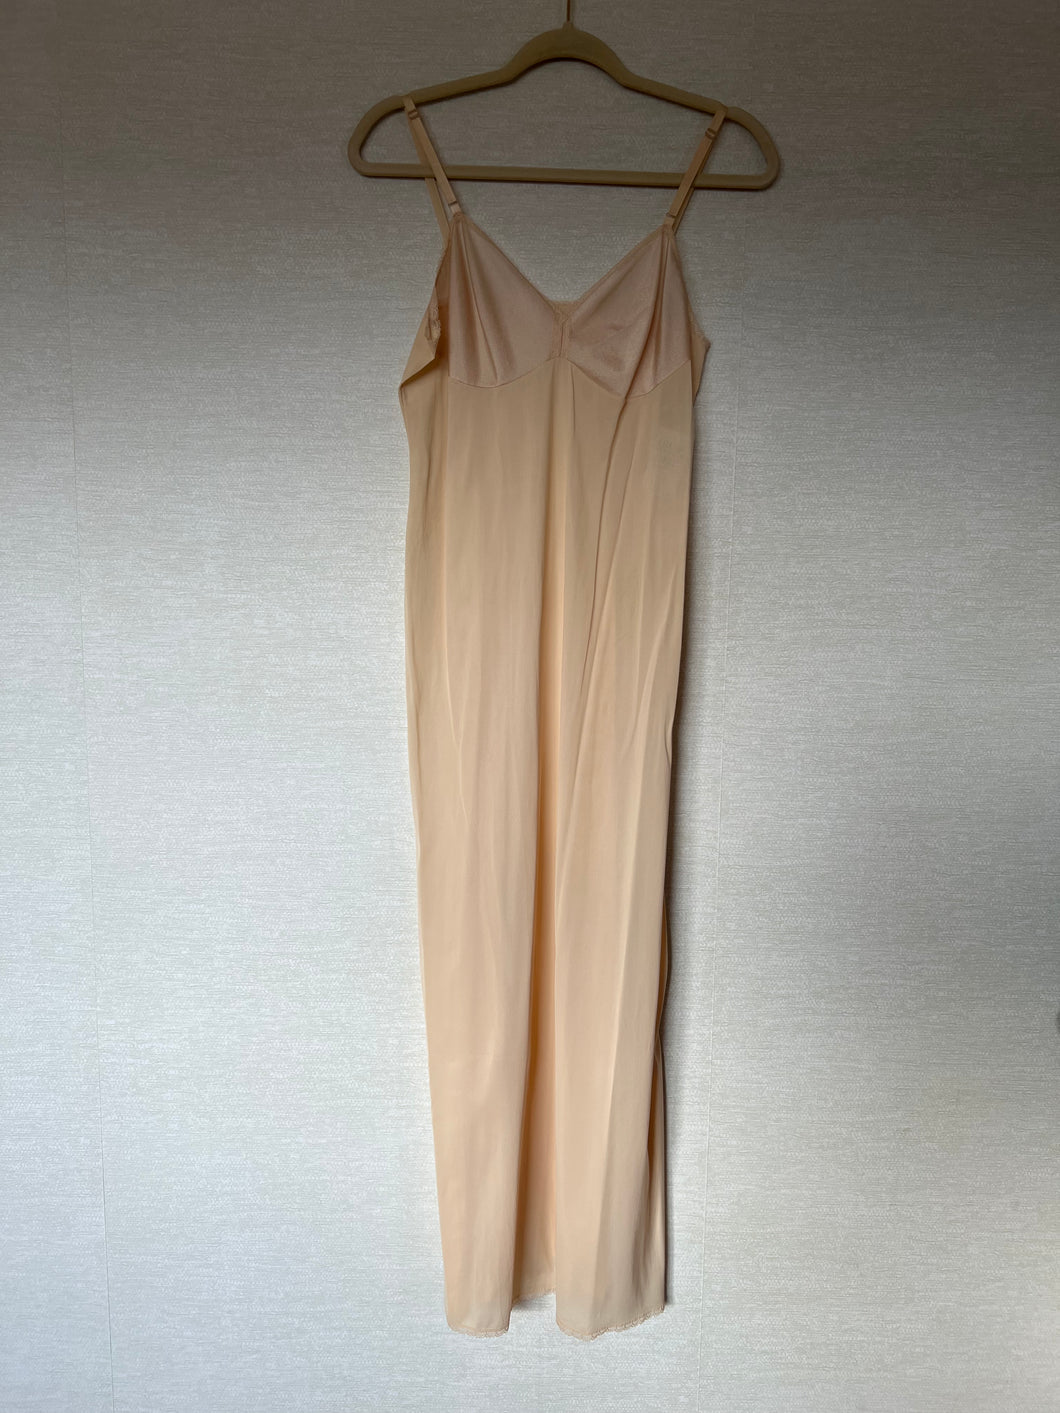 Vintage Vanity Fair Nude/Beige Nightgown